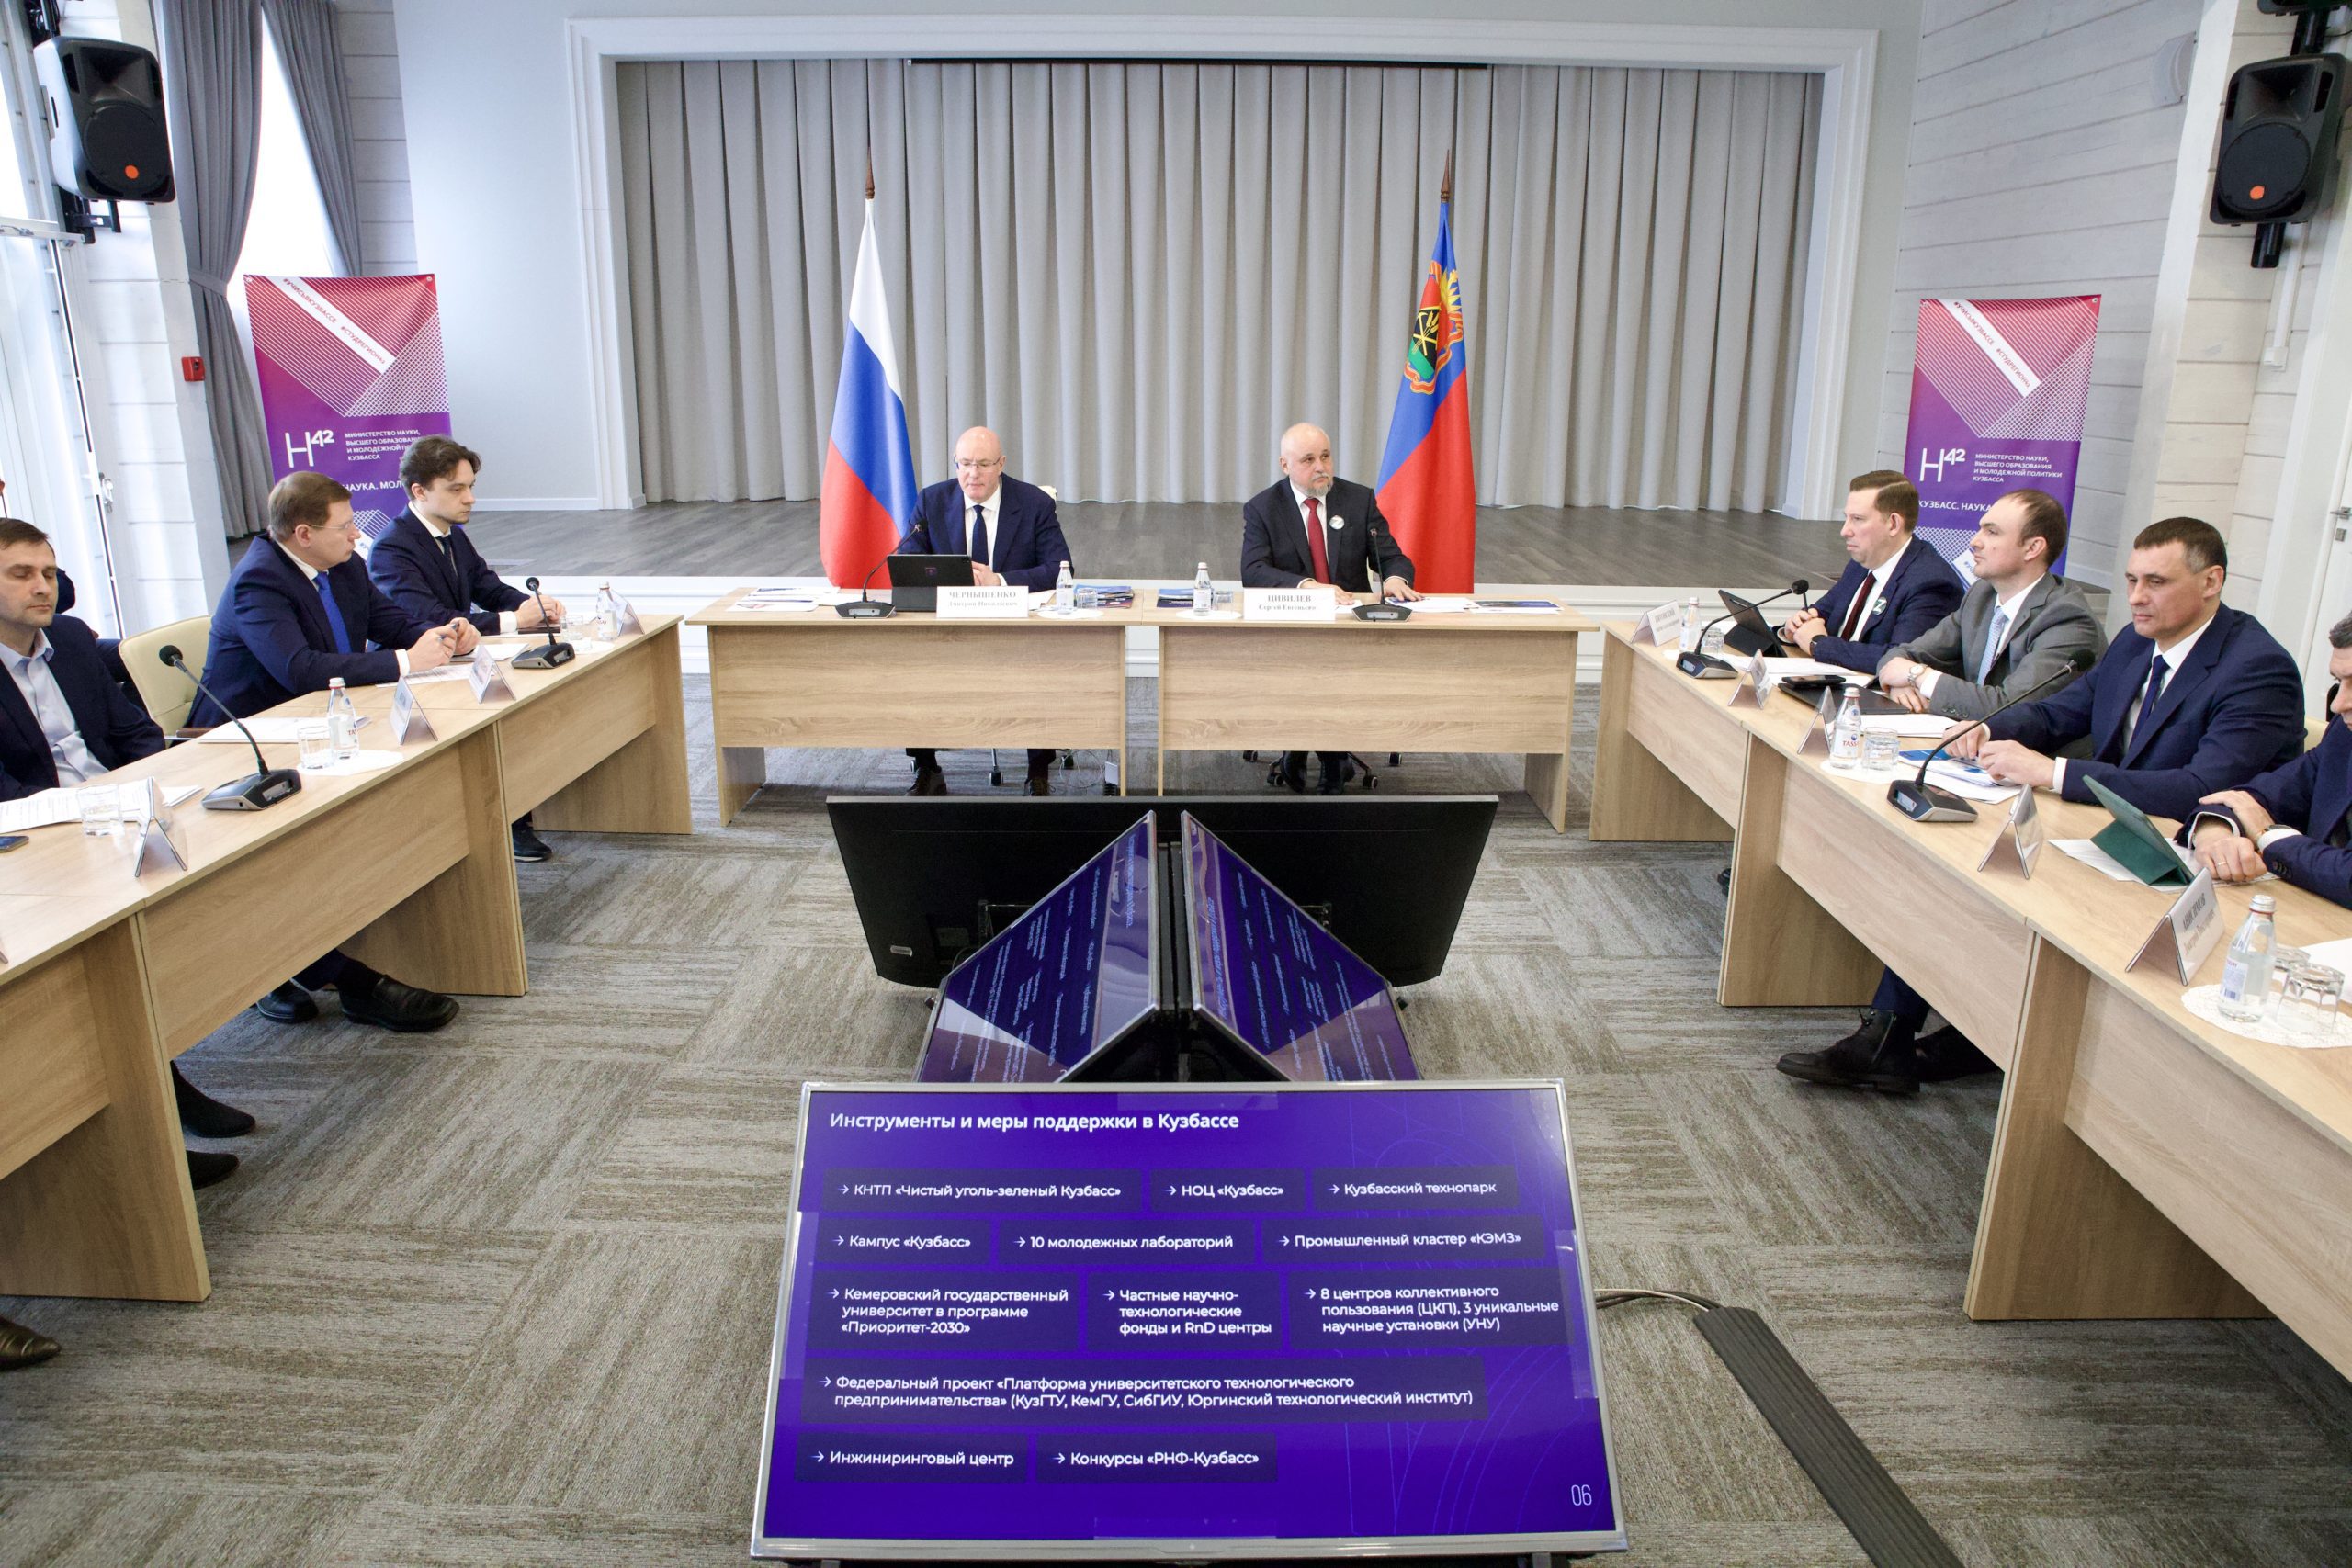 Зампред Правительства РФ Дмитрий Чернышенко обсудил с губернатором Кузбасса создание межвузовского кампуса